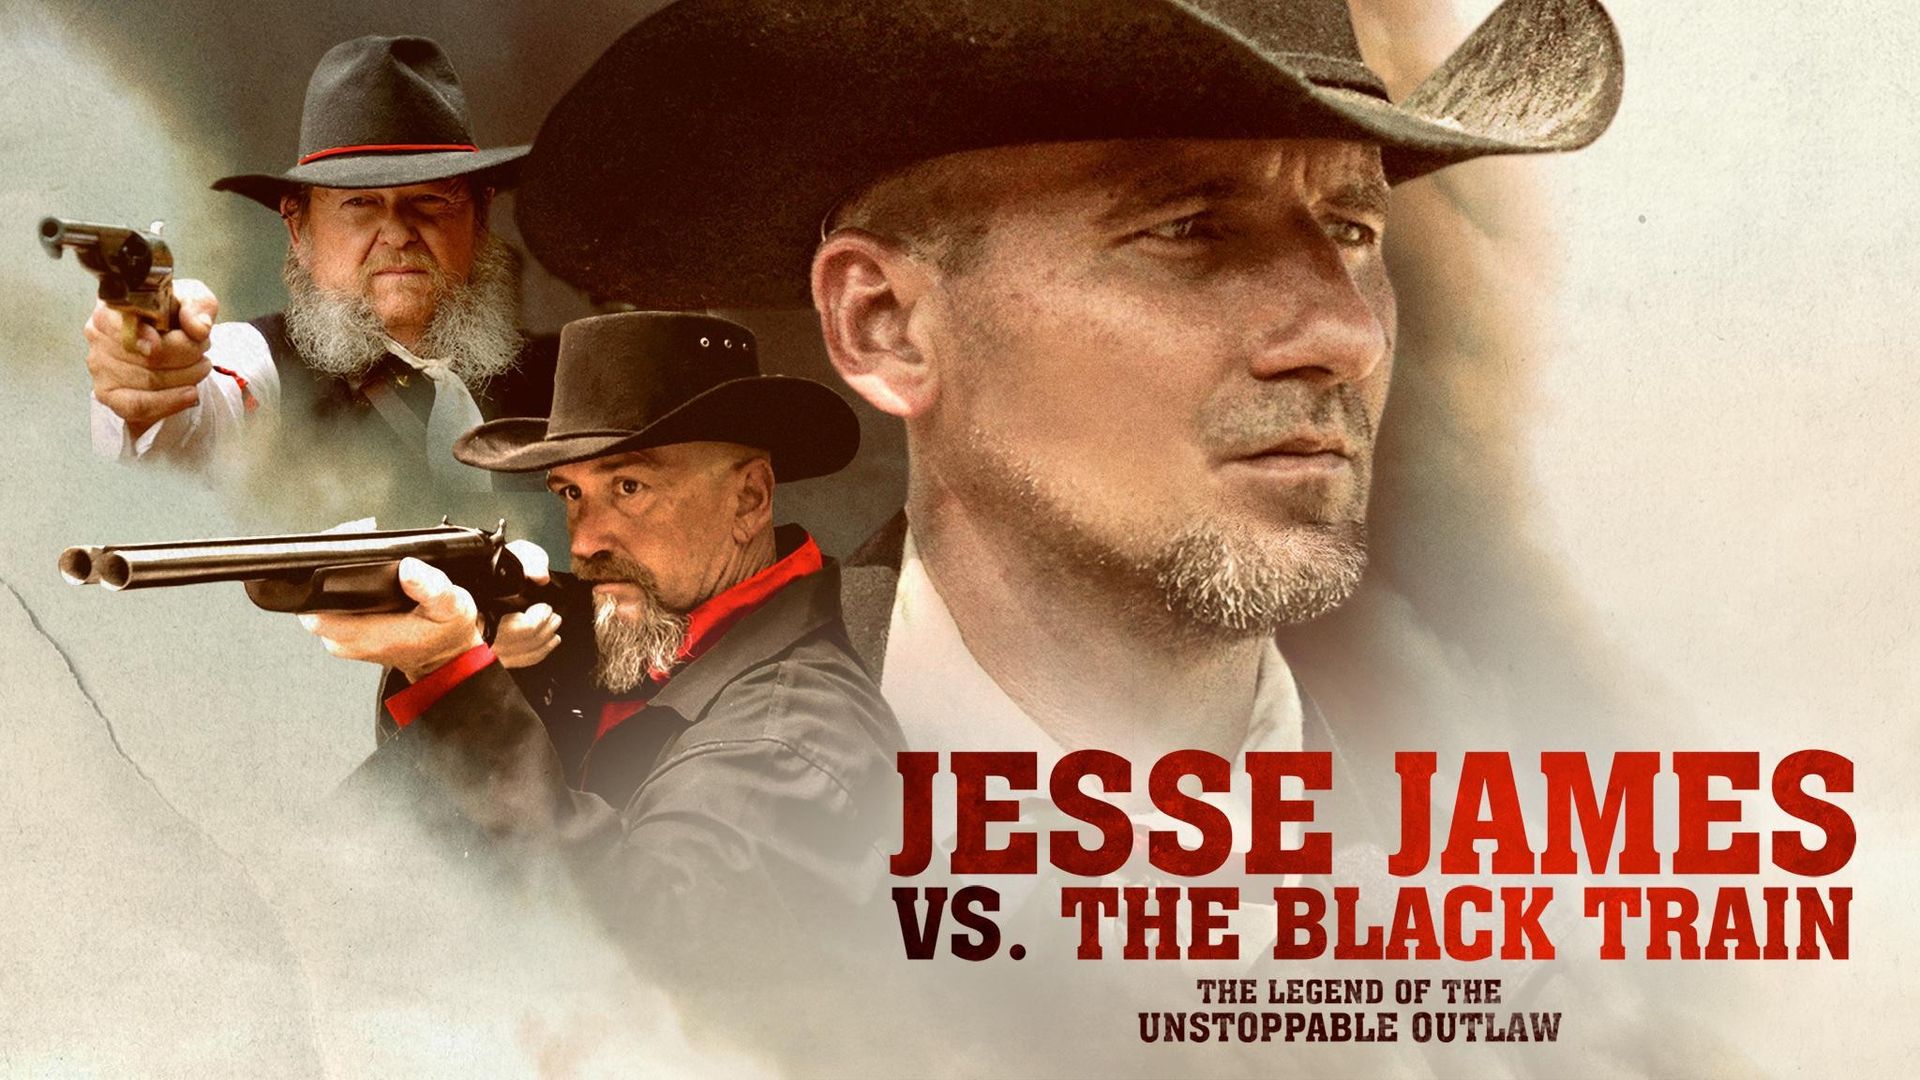 Jesse James vs. The Black Train Backdrop